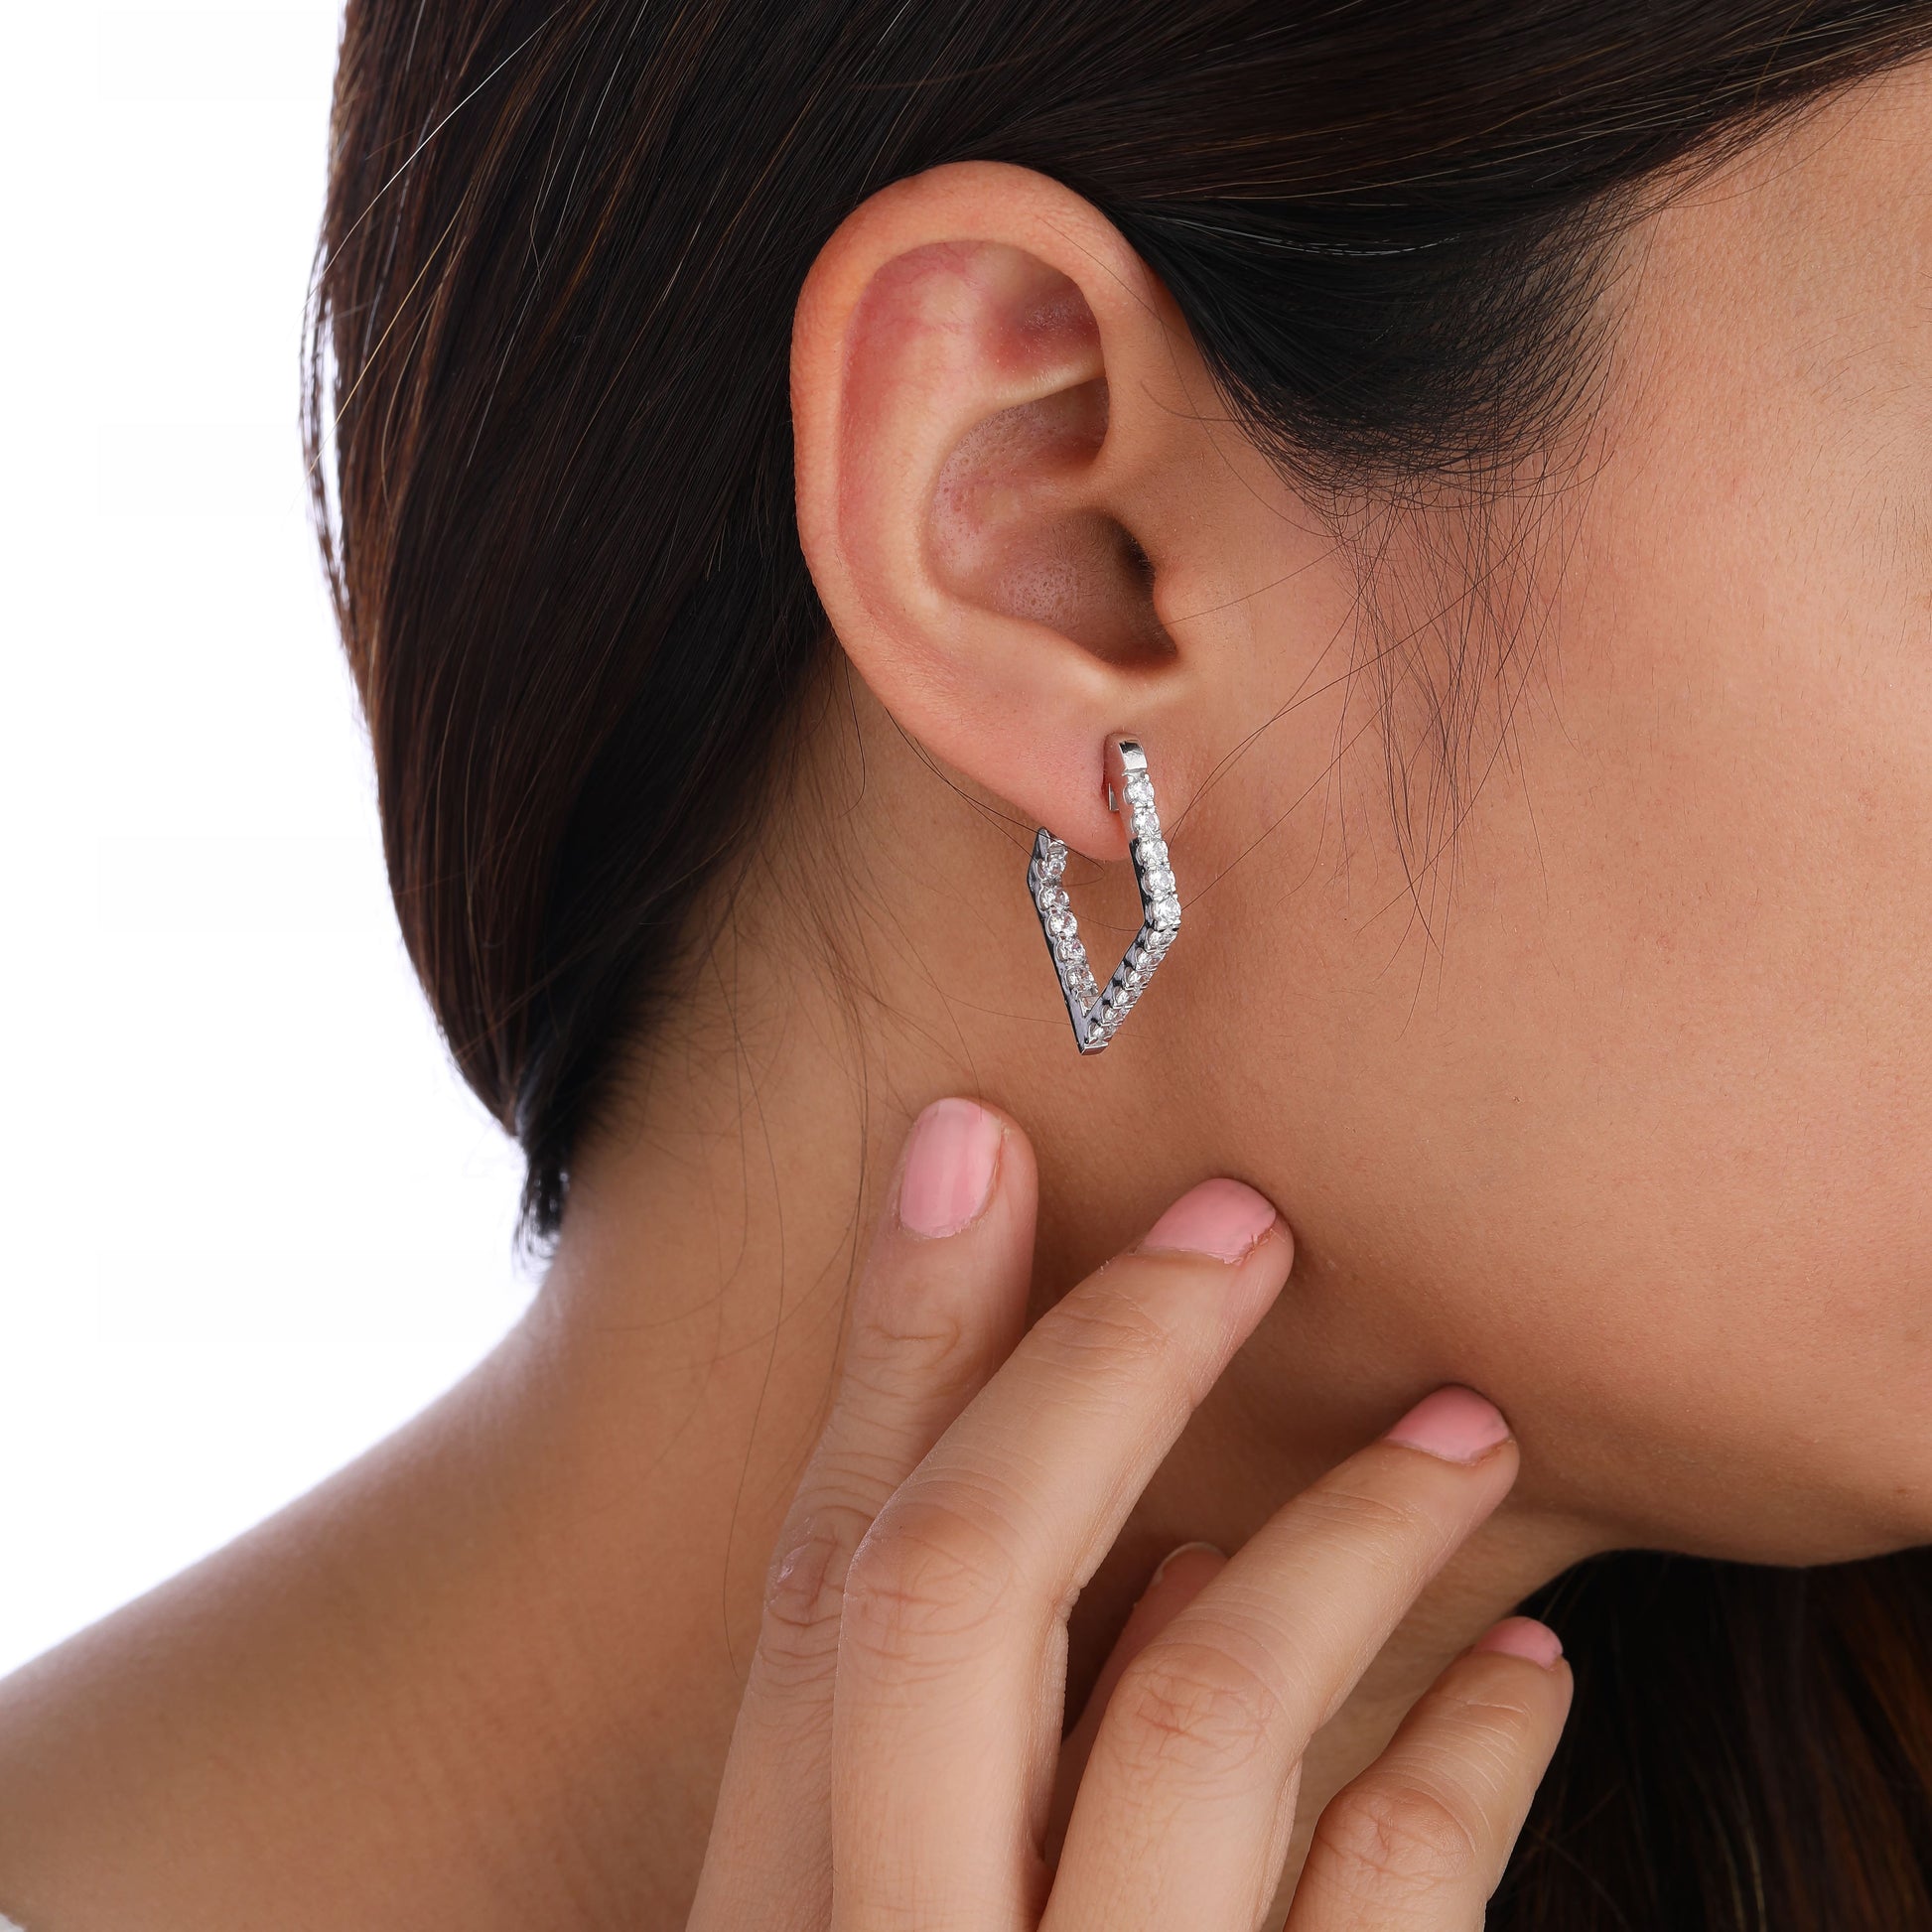 a person wearing huggie earring